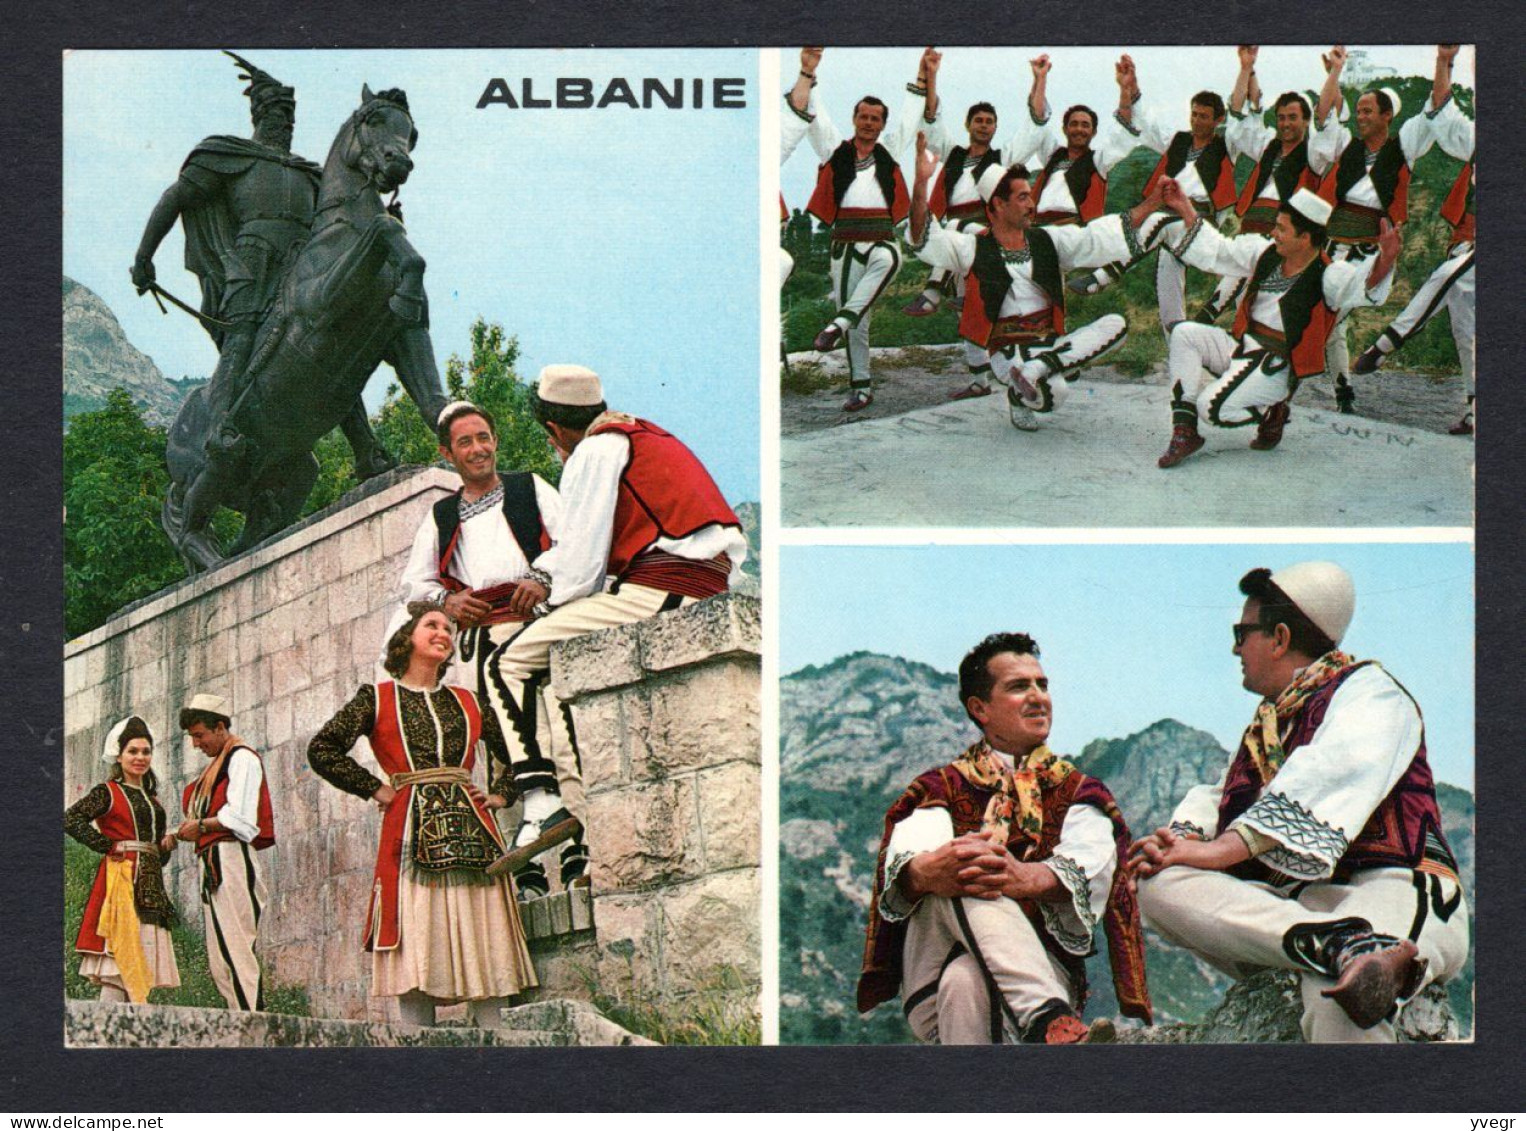 Albanie - Costumes, Le Monument De Scabderbeg Et Danses De L'Albanie Du Nord-est - Multi Vues - Folklore, Coiffes - Albanie